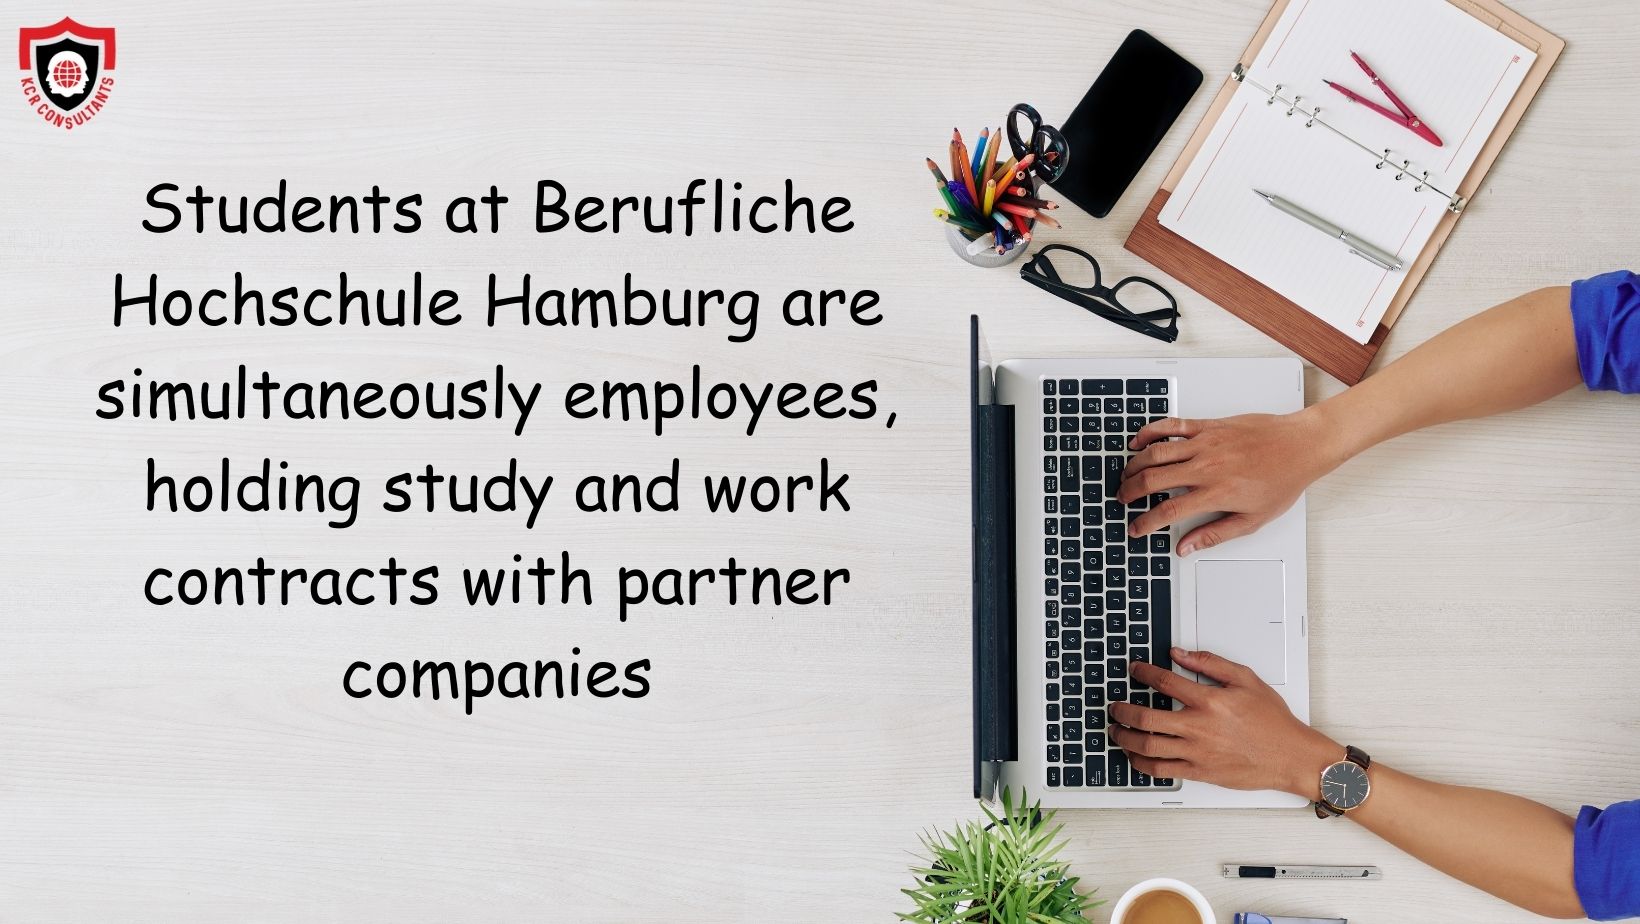 Berufliche Hochschule Hamburg - internship